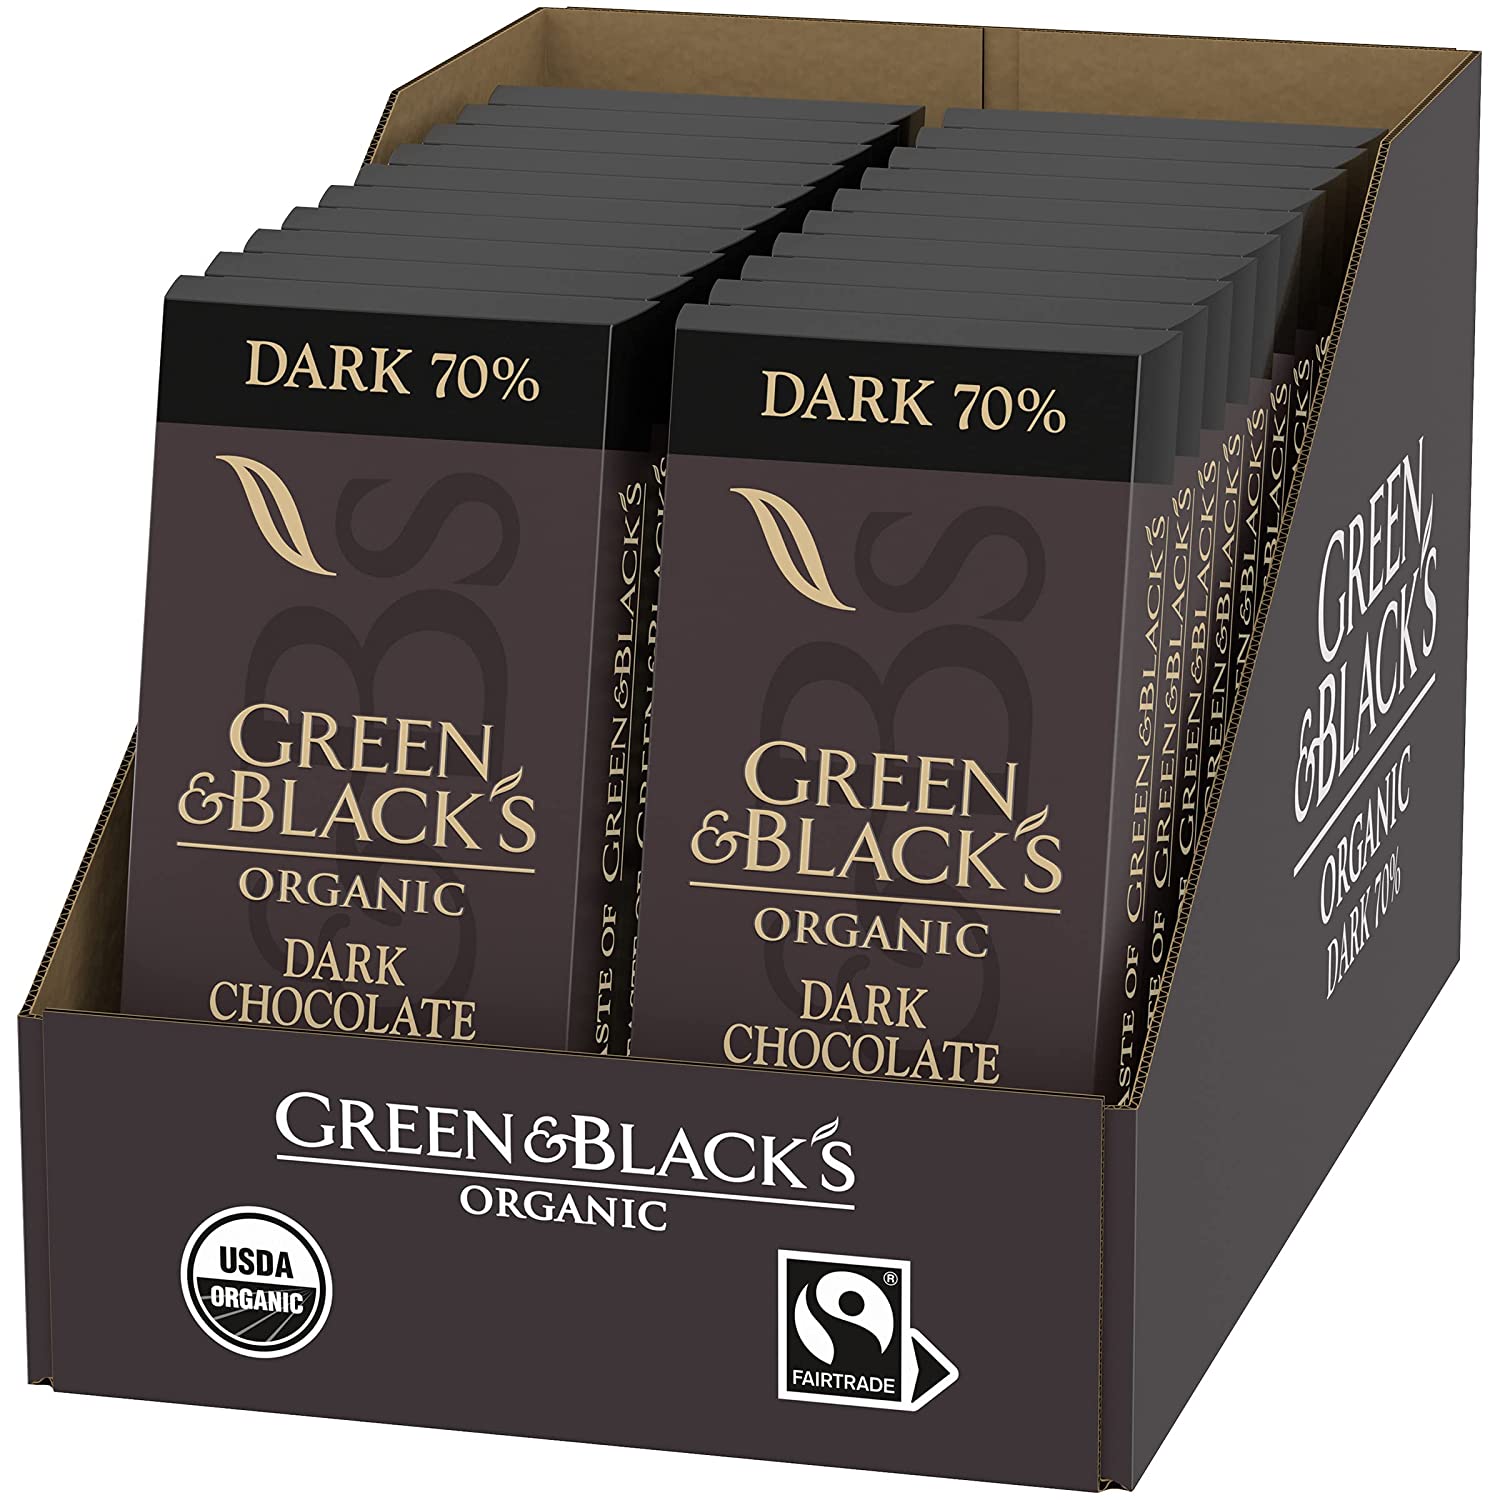 A display of vegan Green & Black's vegan dark chocolate bars